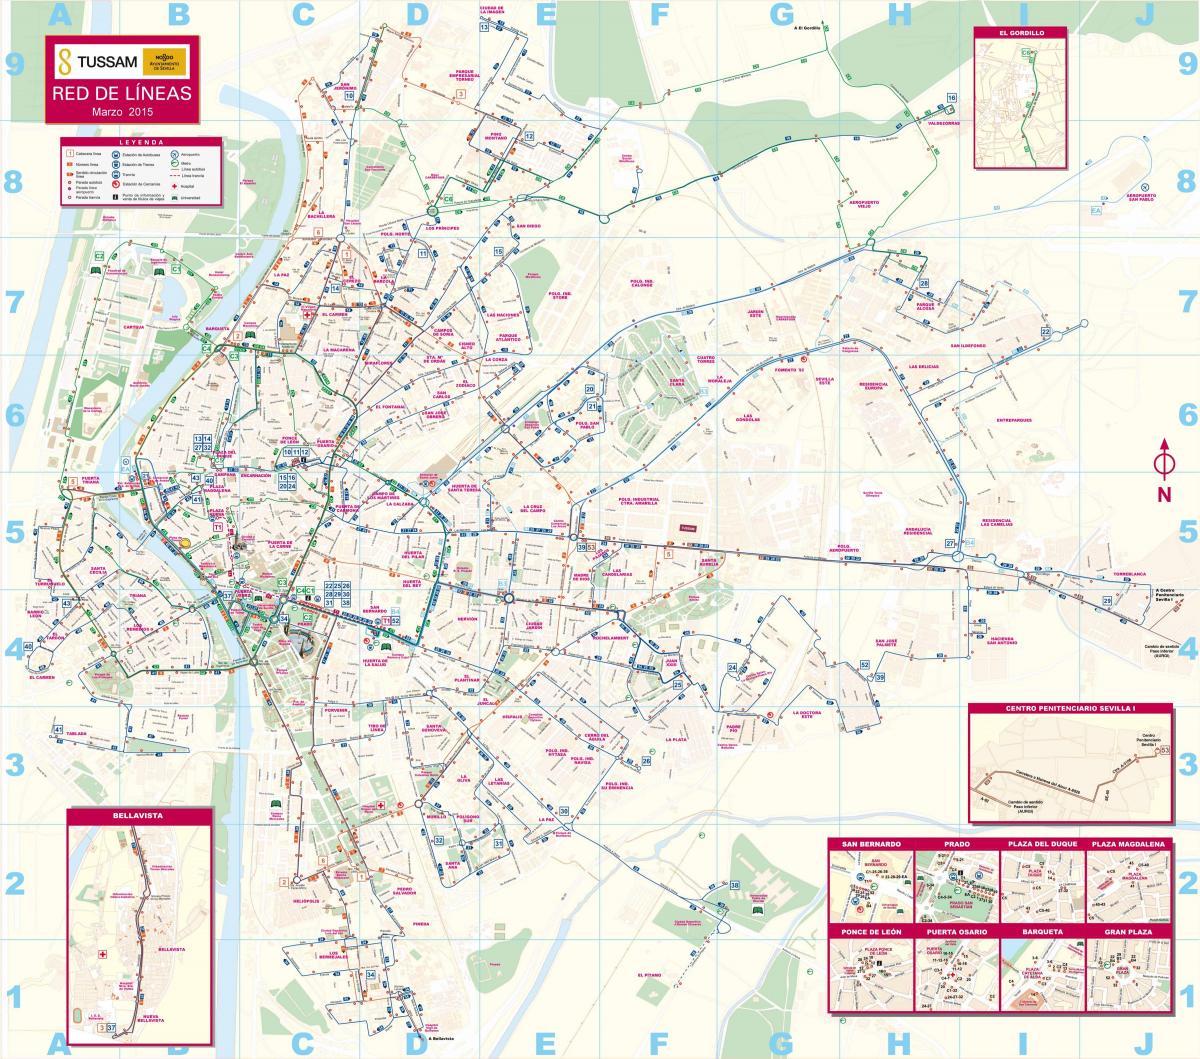 Sevilla toplu taşıma haritası